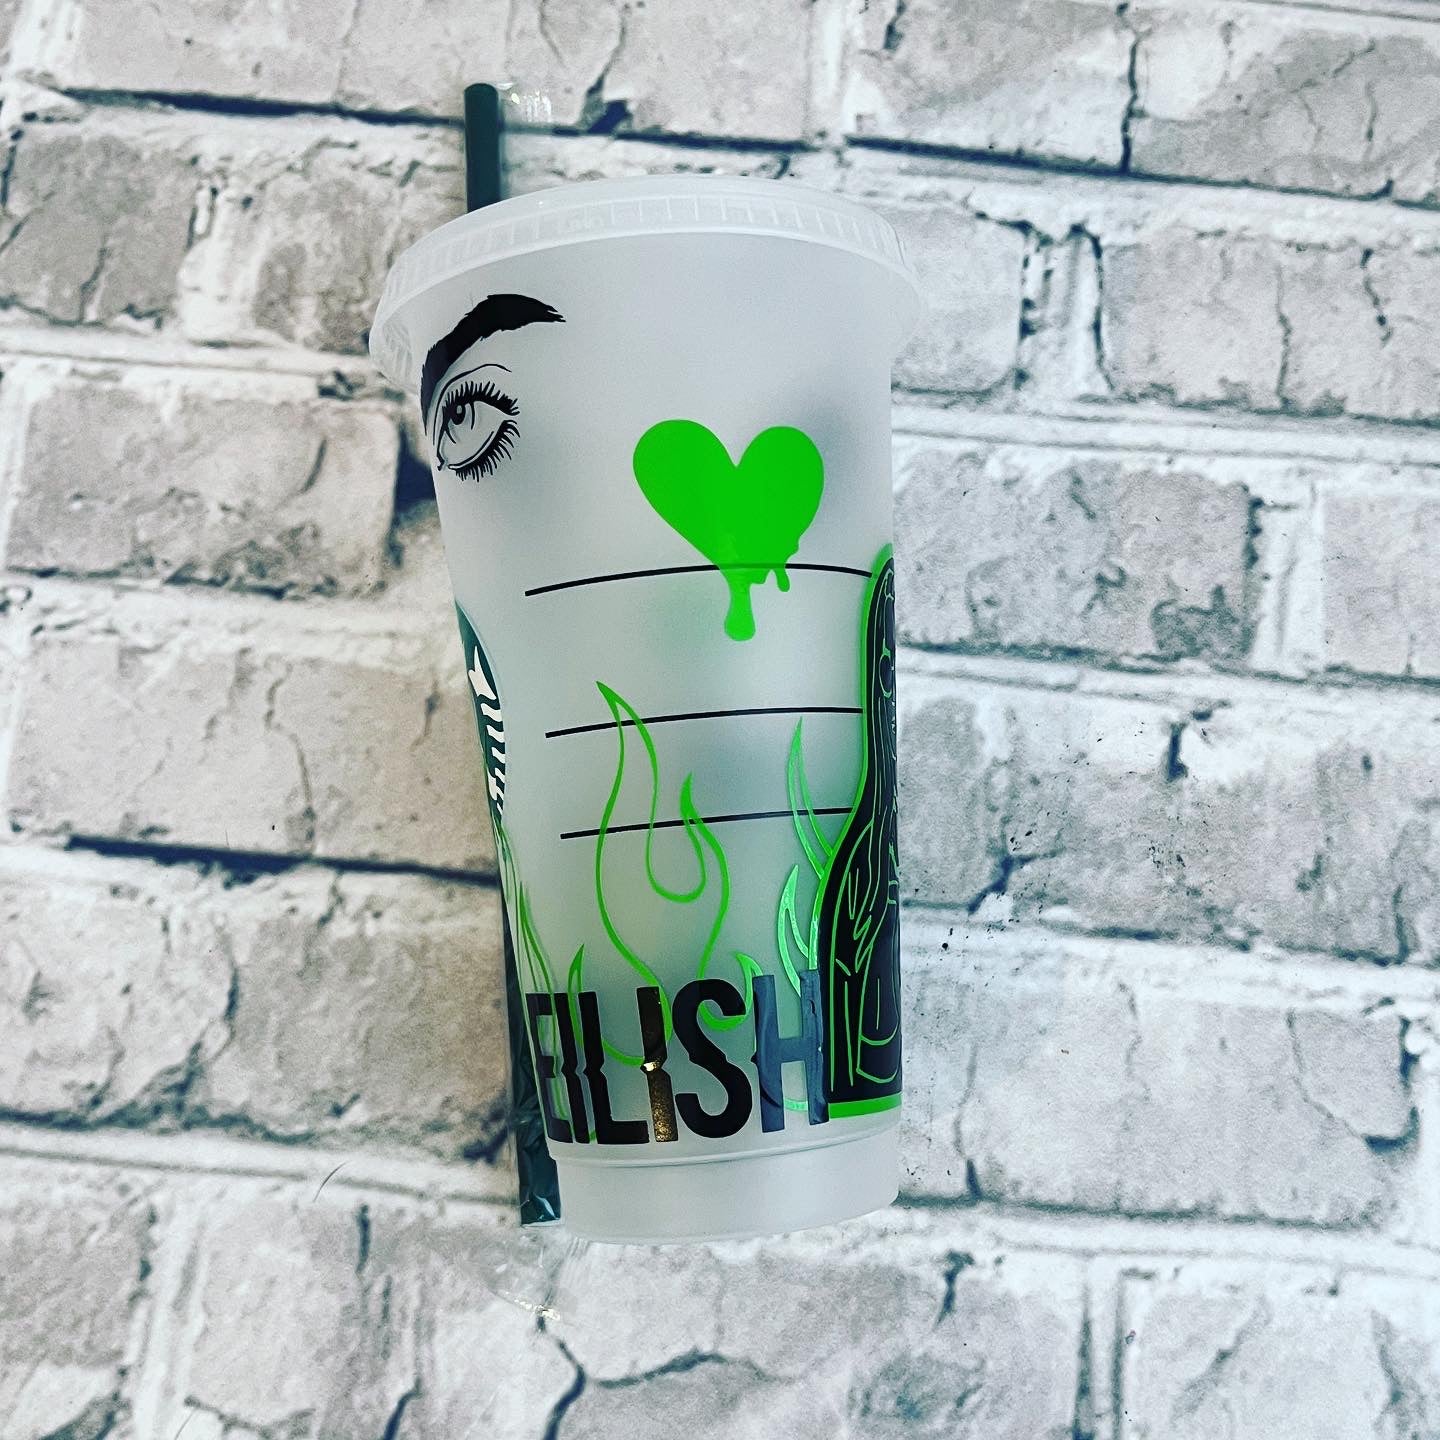 “Billie Eilish” Starbucks Cold Cup